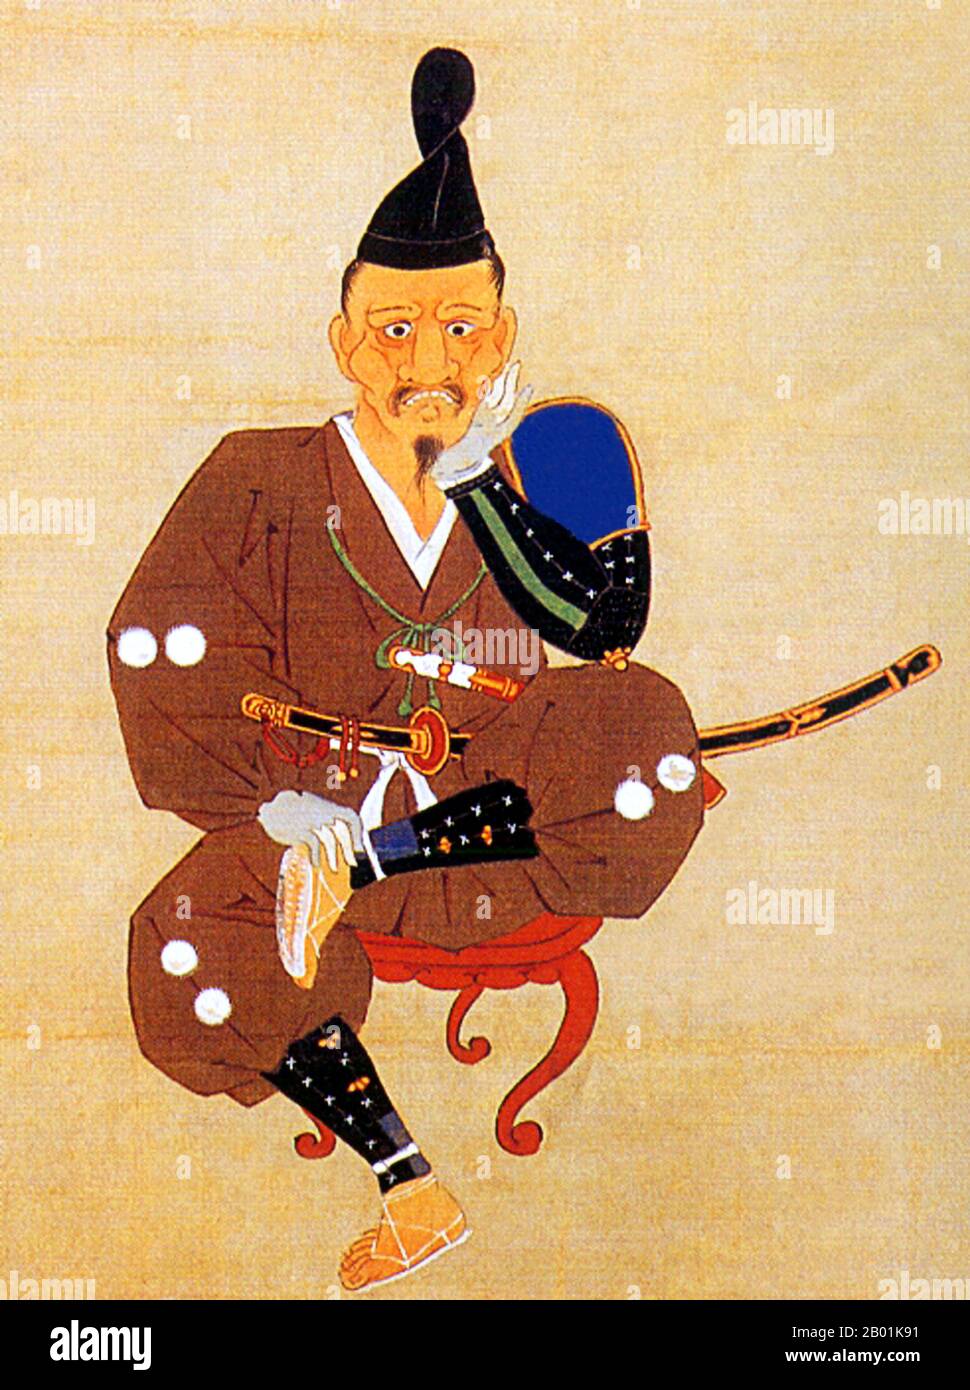 Japan: "Shikamizō". Tokugawa Ieyasu (31. Januar 1543 – 1. Juni 1616) nach seiner Niederlage in Mikatagahara (25. Januar 1573) durch die Truppen von Takeda Shingen. Malerei, ca. 1573. Tokugawa Ieyasu war der Gründer und erste Shogun des Tokugawa-Shogunats von Japan, das von der Schlacht bei Sekigahara 1600 bis zur Meiji-Restauration 1868 regierte. Ieyasu übernahm 1600 die Macht, erhielt 1603 die Ernennung zum Shogun, trat 1605 aus dem Amt ab, blieb aber bis zu seinem Tod 1616 an der Macht. Ieyasu wurde posthum in Nikkō Tōshō-gū unter dem Namen Tōshō Daigongen festgeschrieben. Stockfoto